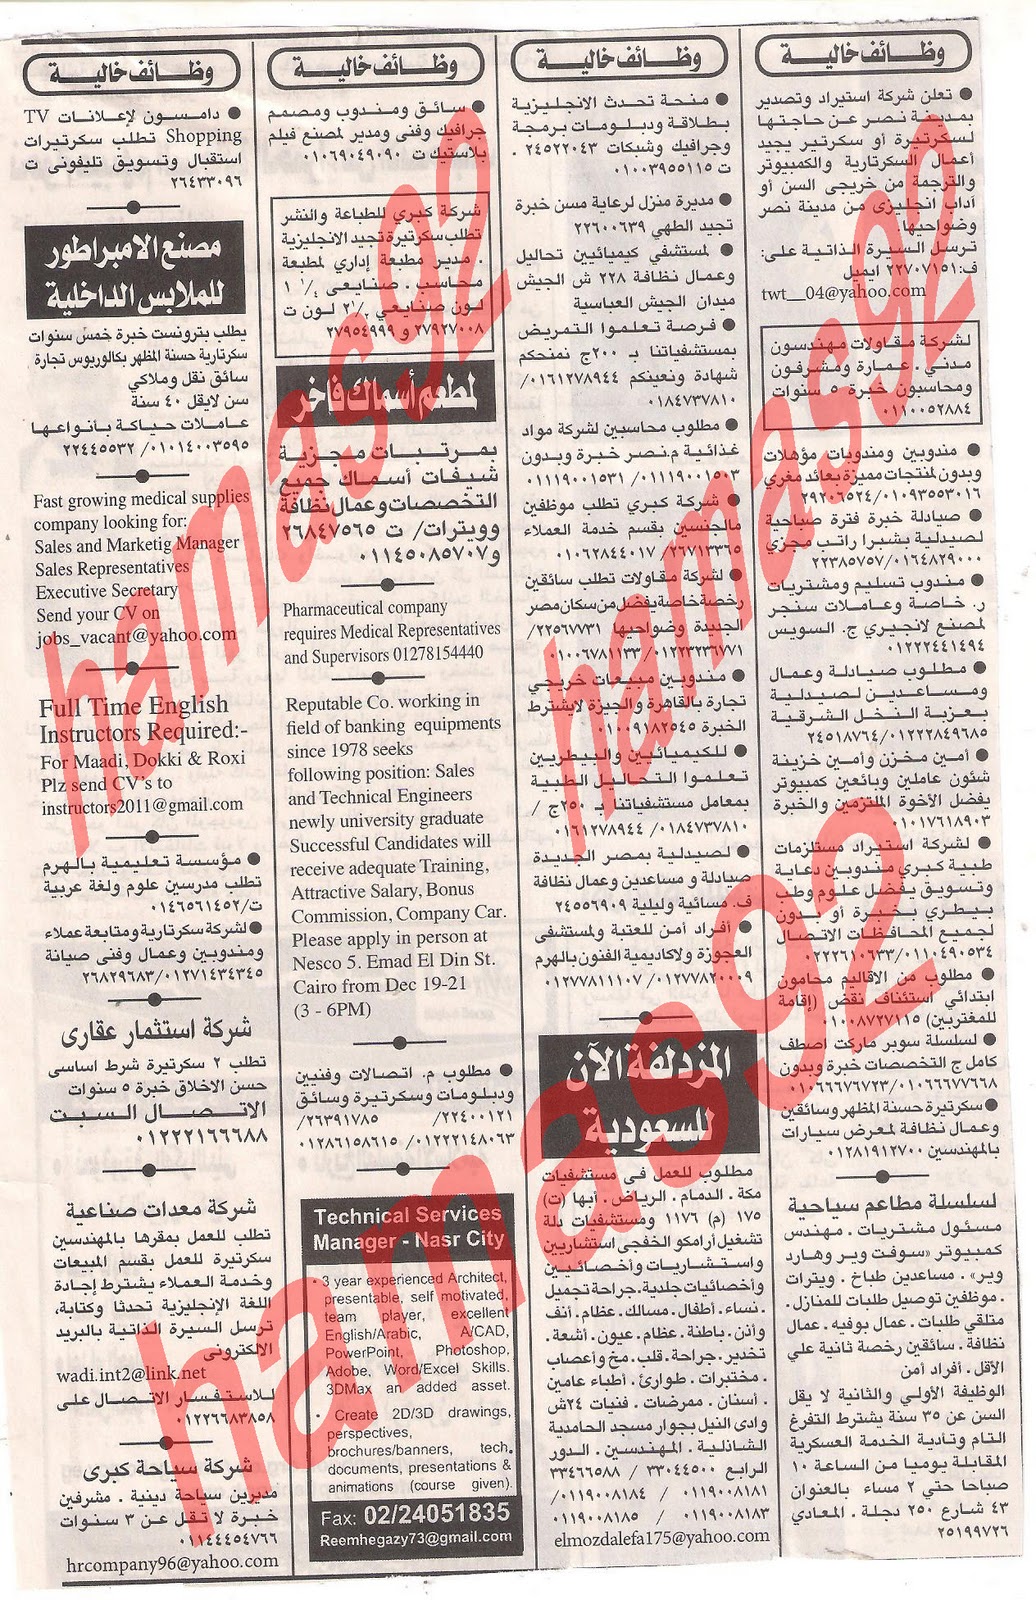 وظائف جريدة اهرام الجمعة 16 ديسمبر 2011 , الجزء الاول Picture+008